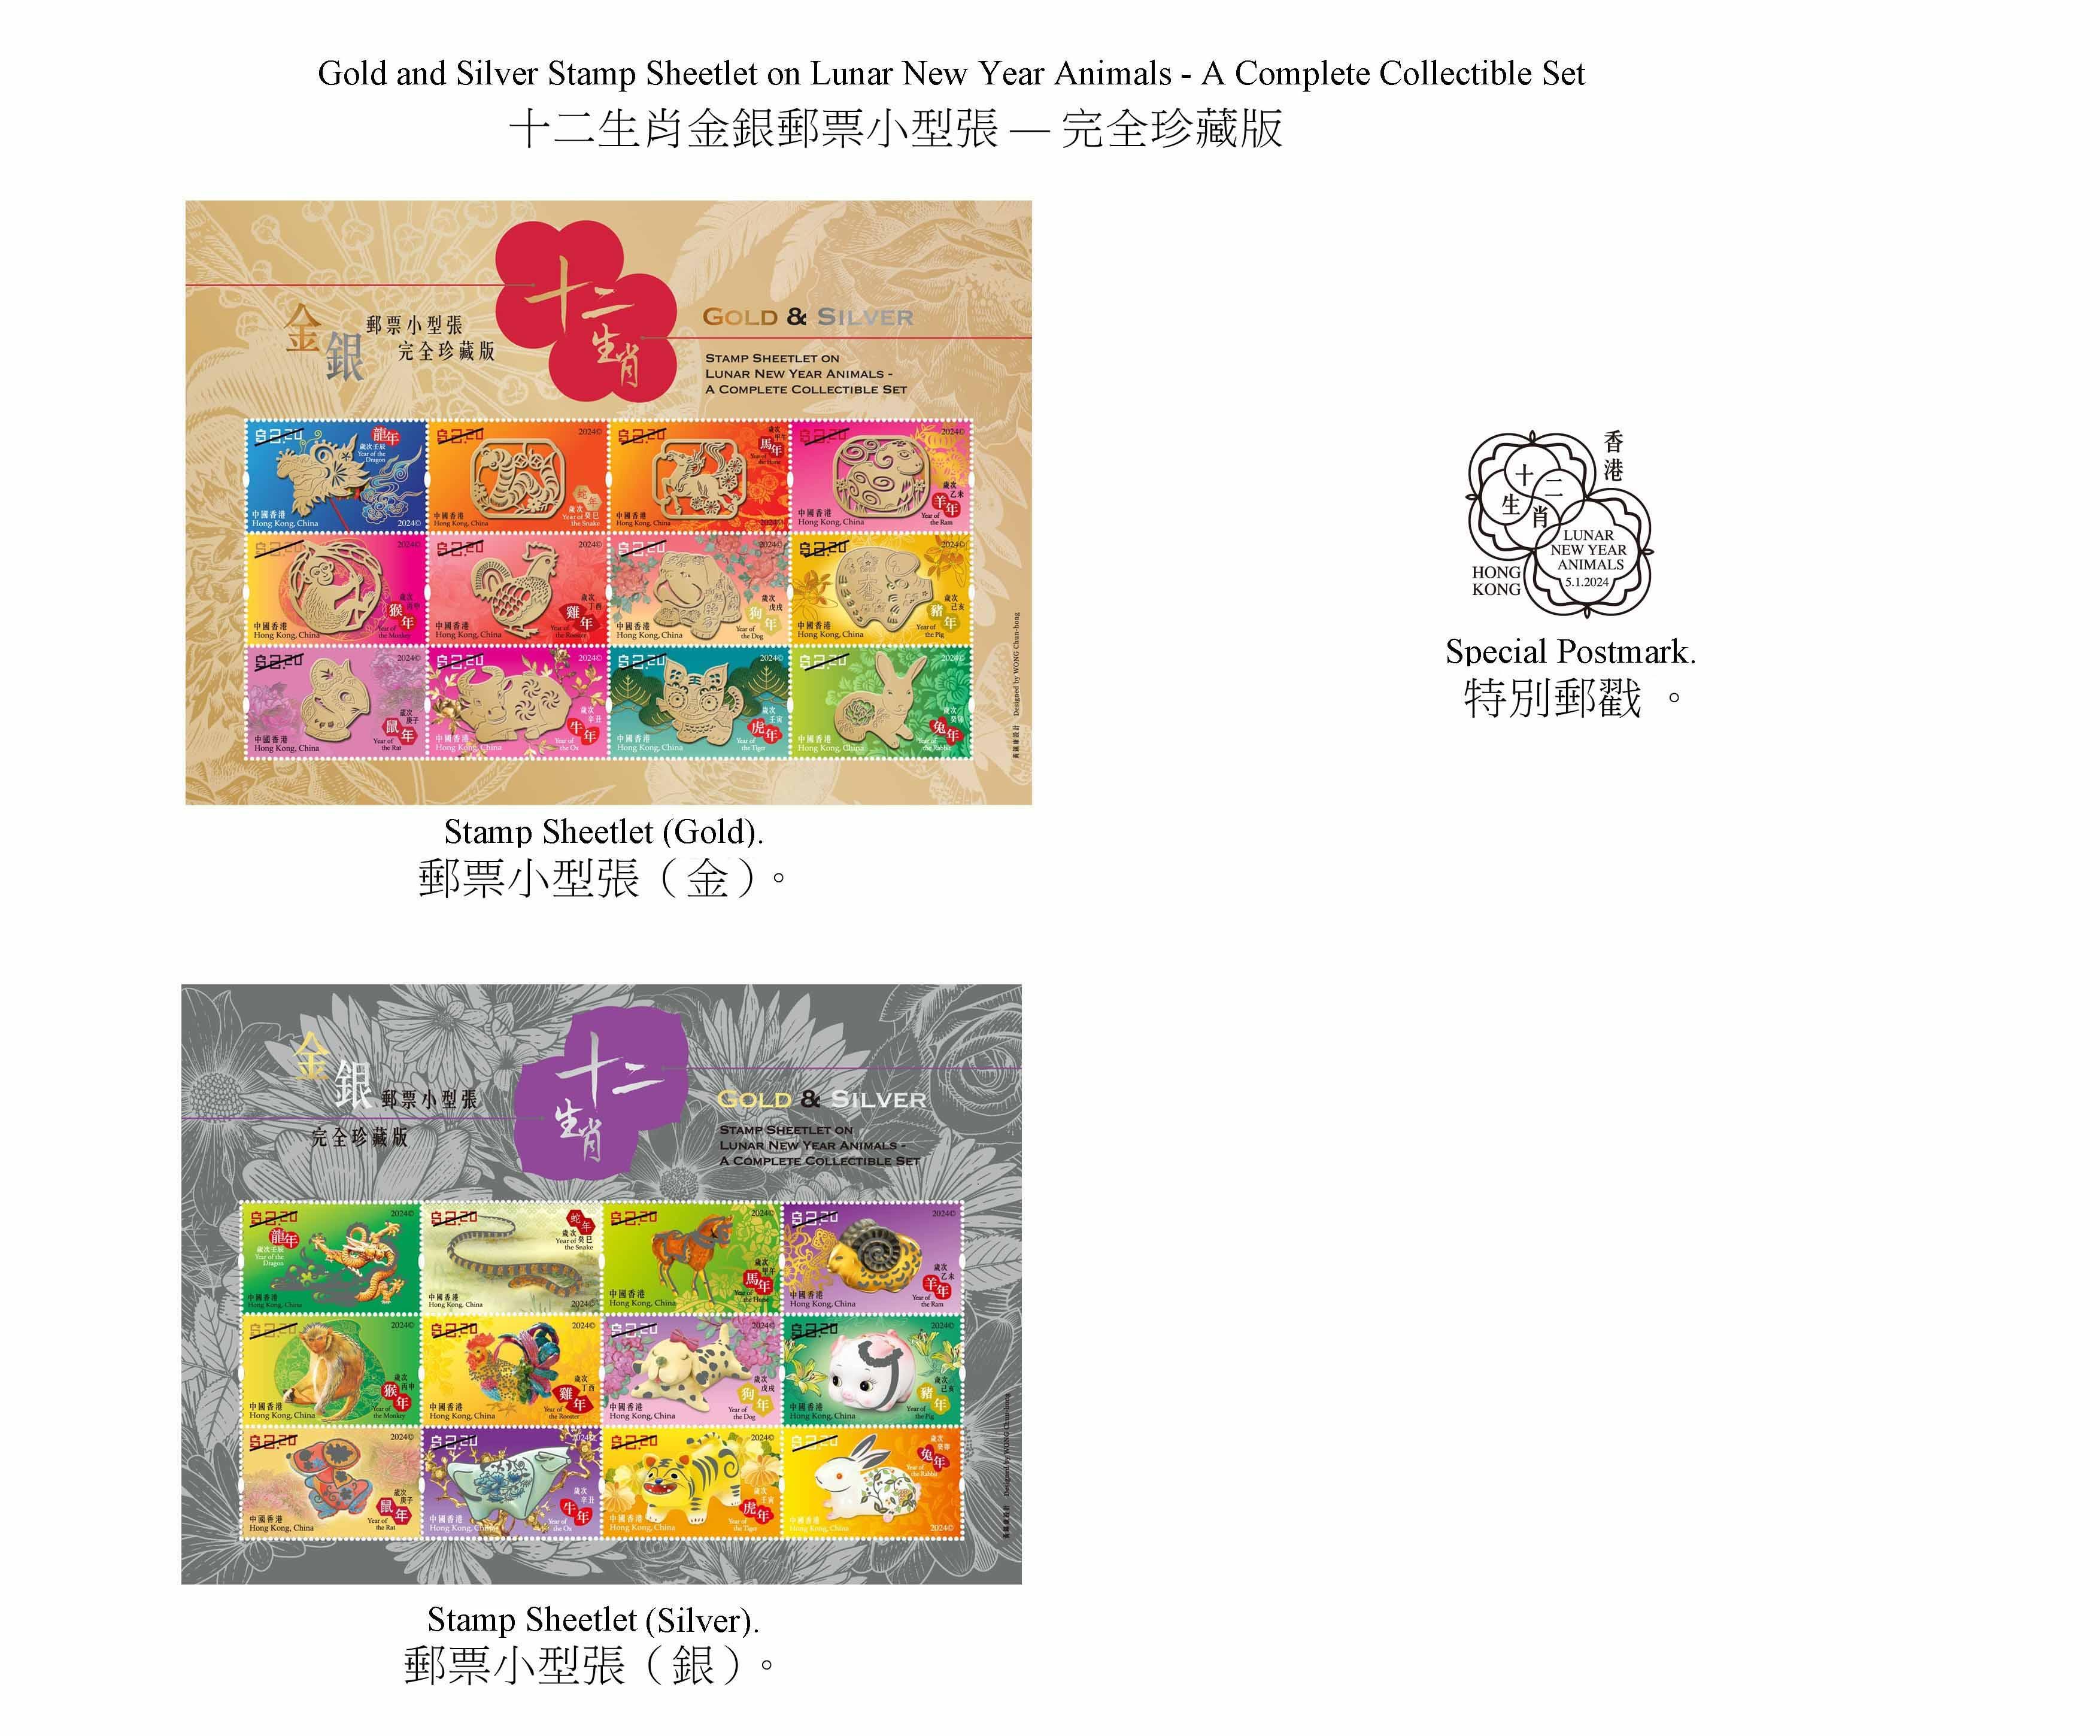 香港邮政二○二四年一月五日（星期五）发行以「岁次甲辰（龙年）」为题的特别邮票及相关集邮品，同日亦推出「十二生肖金银邮票小型张──完全珍藏版」。图示以「十二生肖金银邮票小型张──完全珍藏版」为题的邮票小型张和特别邮戳。